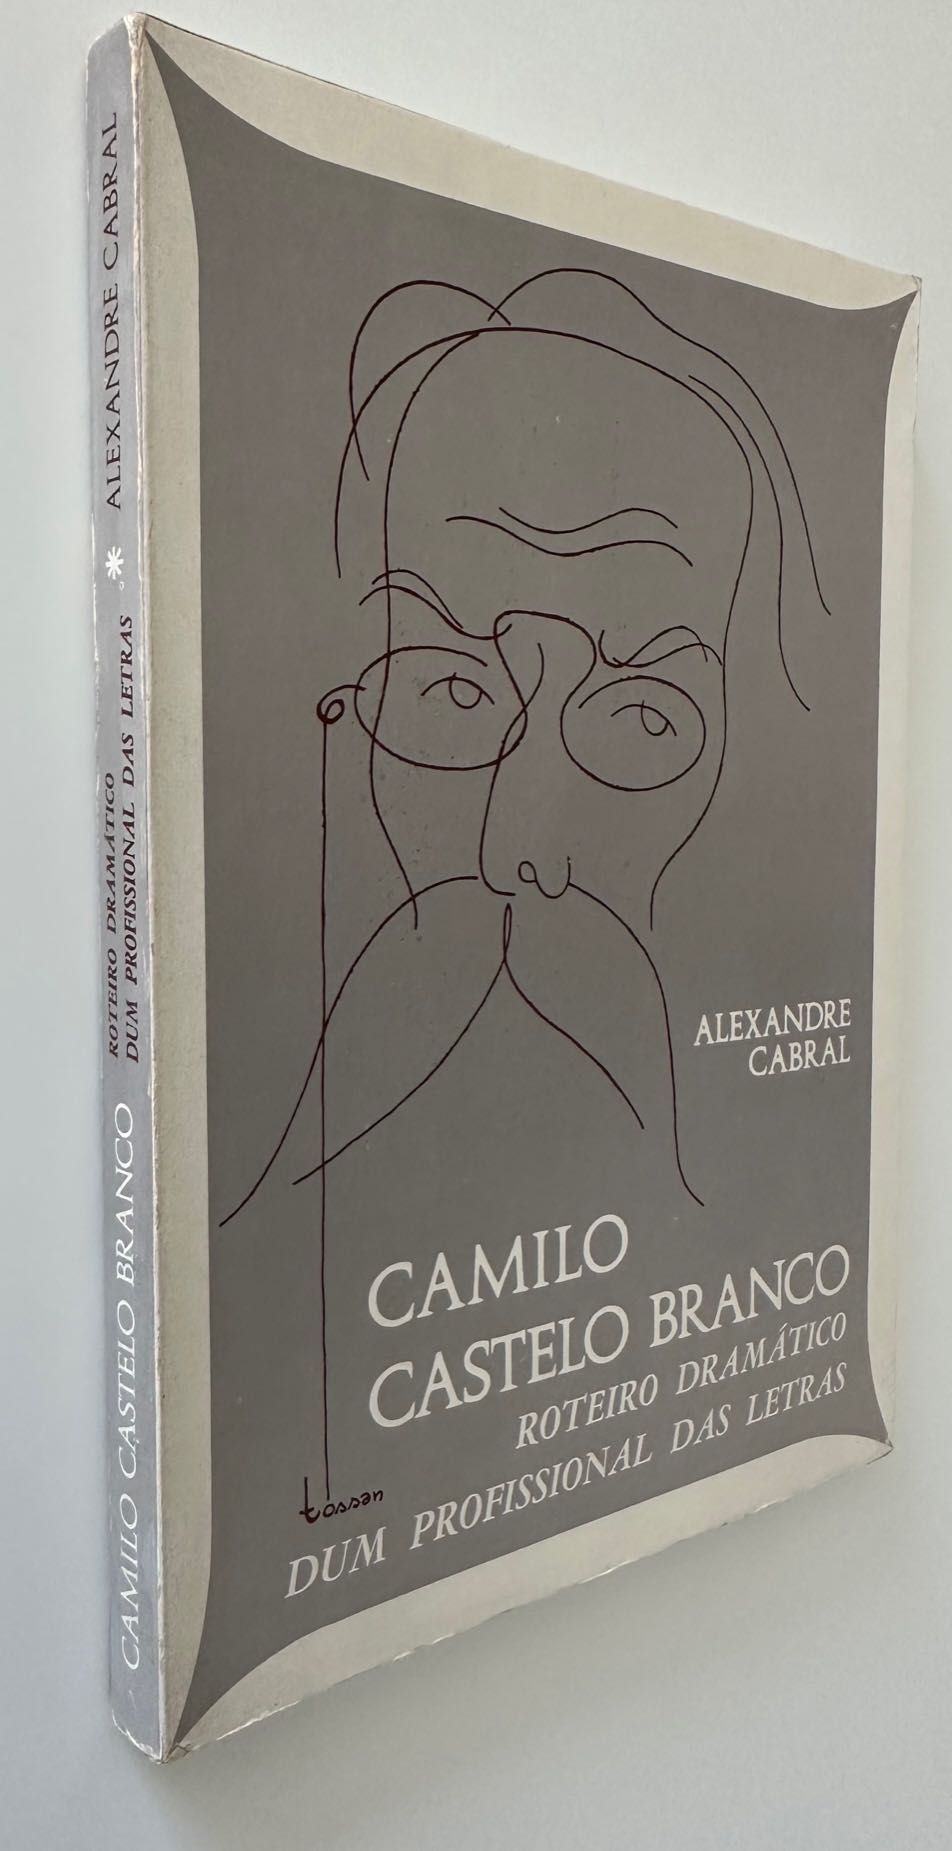 Camilo Castelo Branco. Roteiro Dramático - Alexandre Cabral - 1980